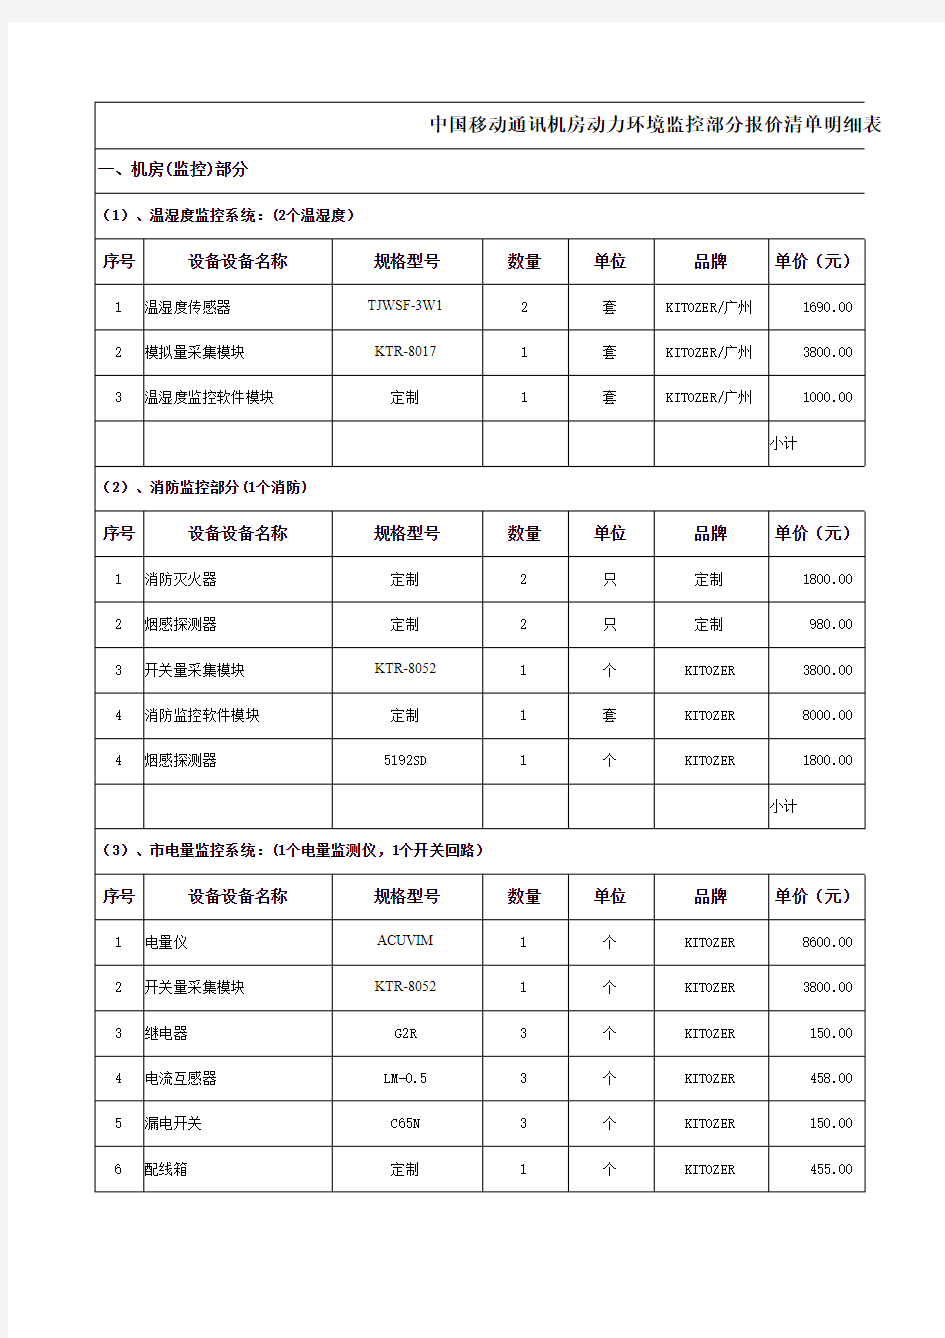 中国移动通讯机房动力环境监控部分报价清单明细表